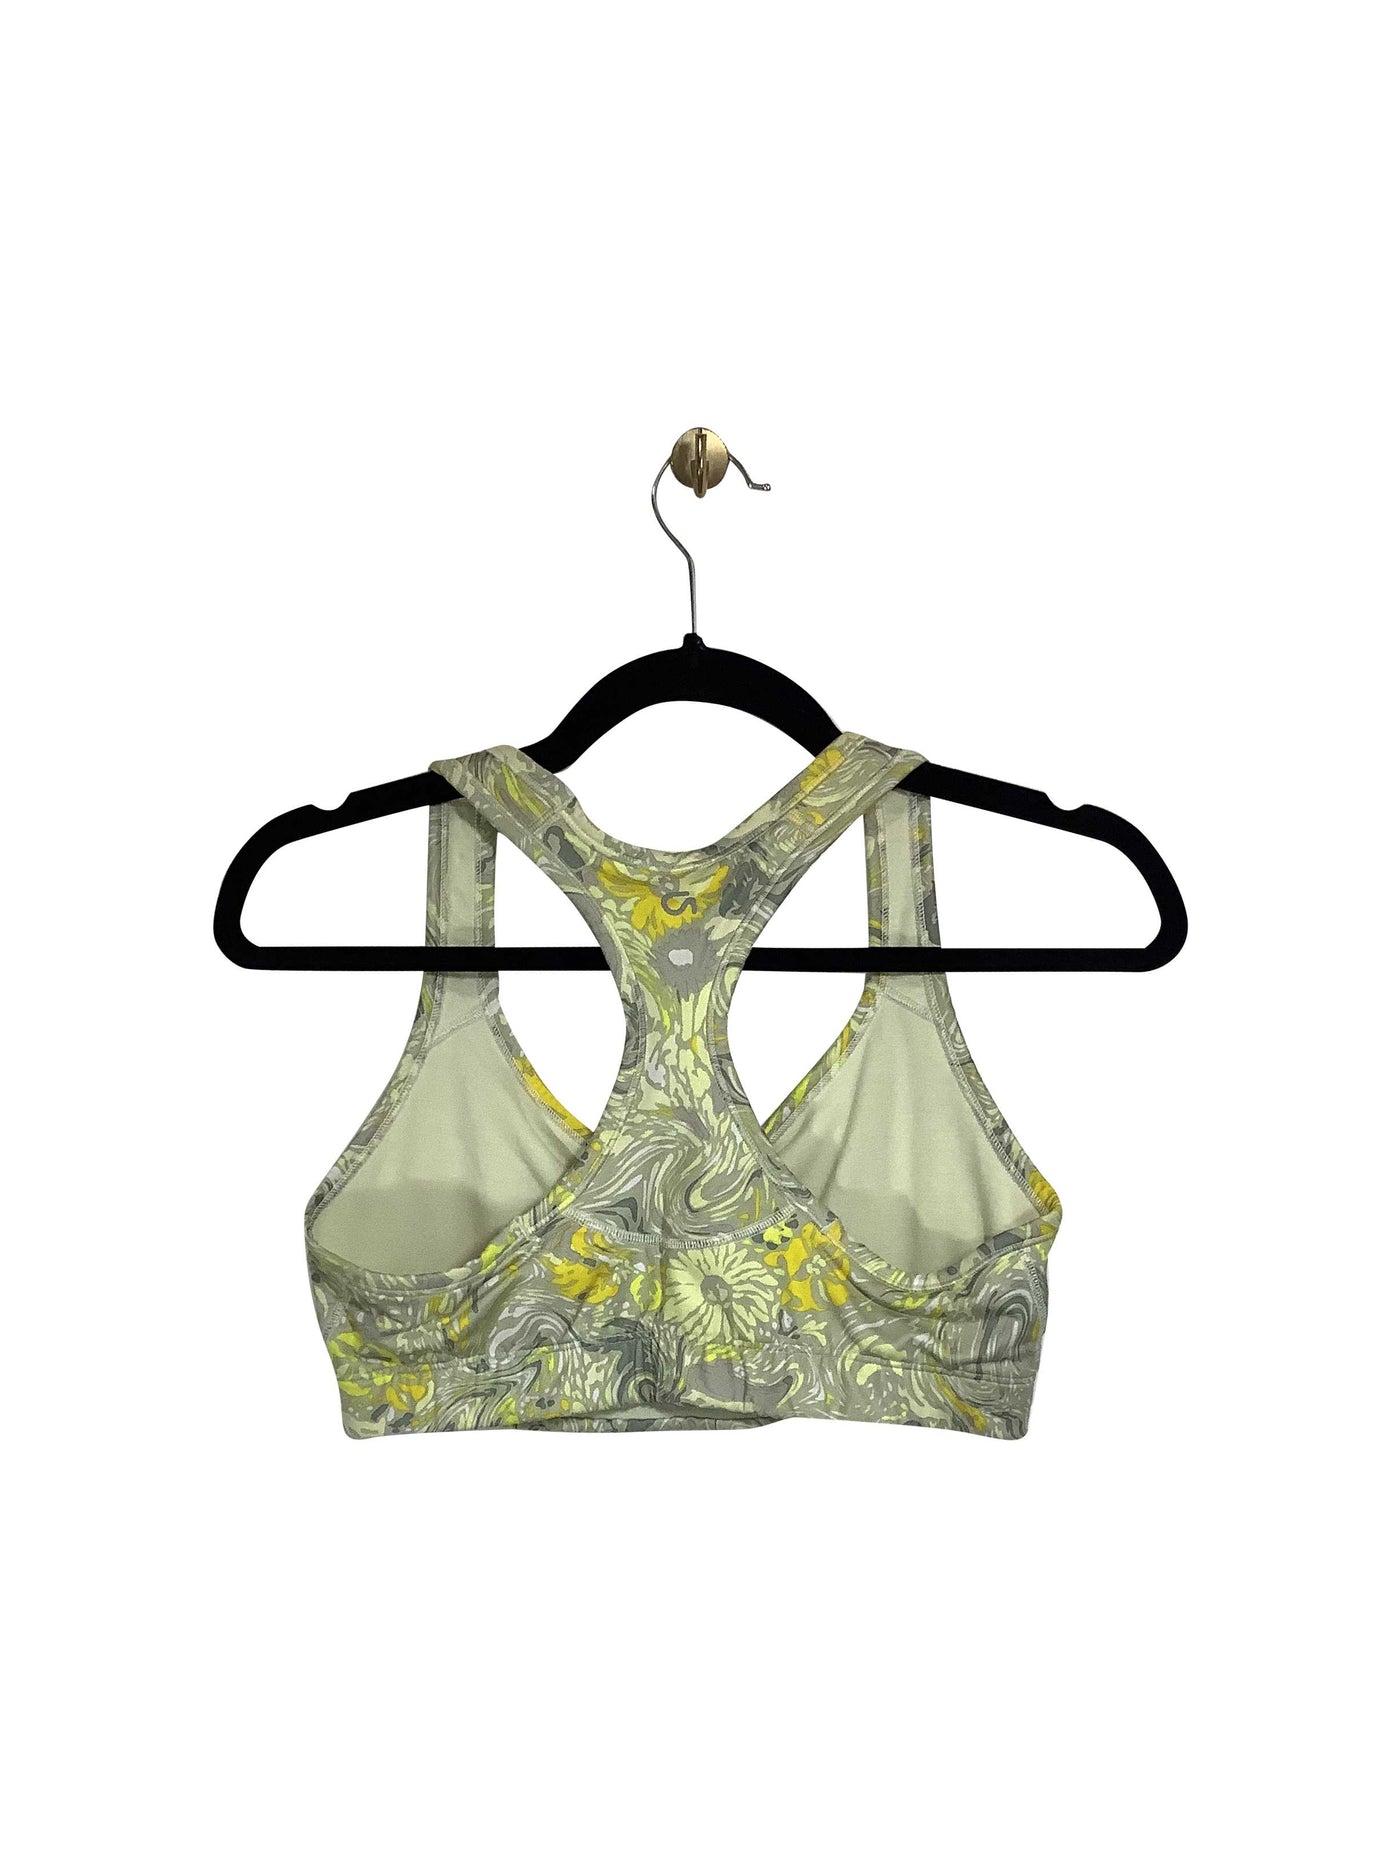 GAP Regular fit Activewear Sport bra in Yellow - Size M | 12.25 $ KOOP